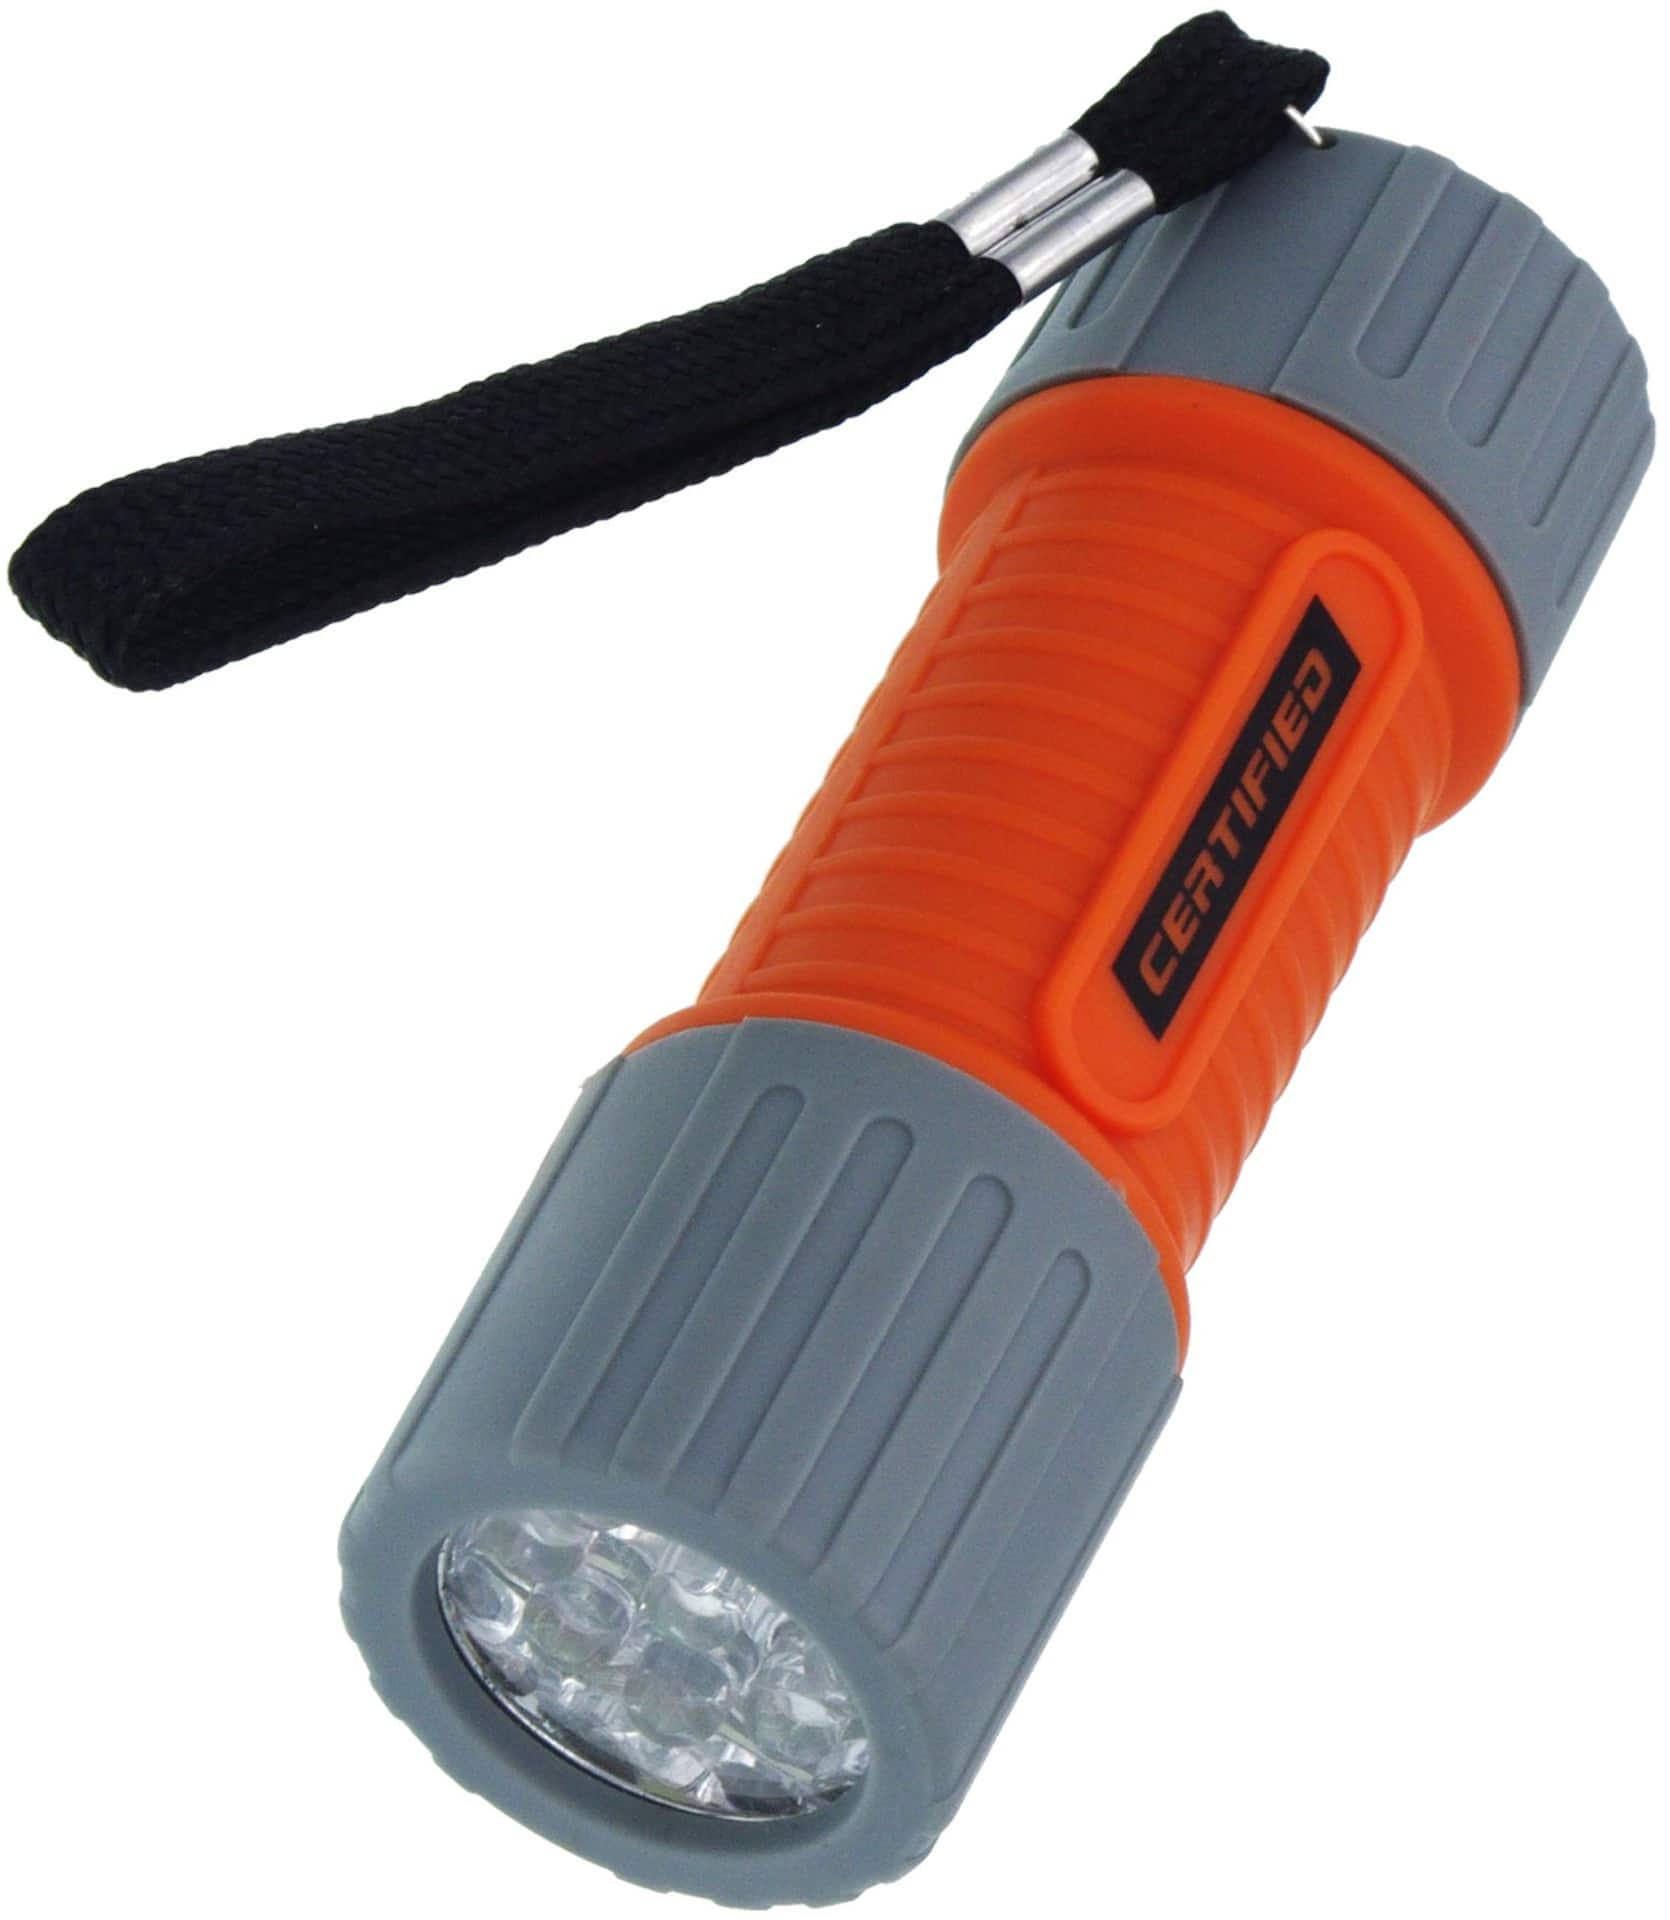 Flashlight Battery 3 AAA Plastic Battery Holder Unit for LED